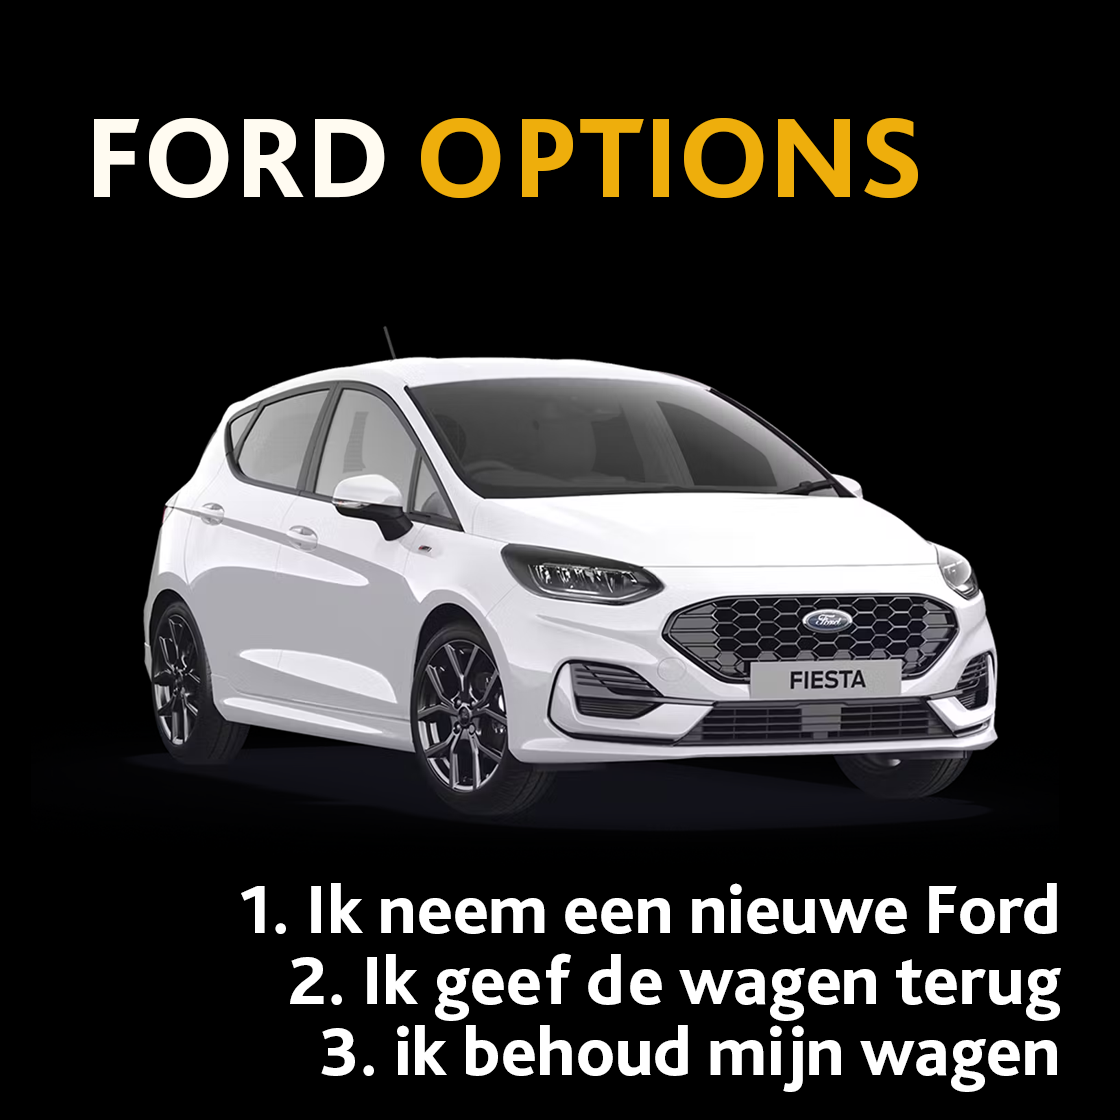 Ford options imageblock 3 ex